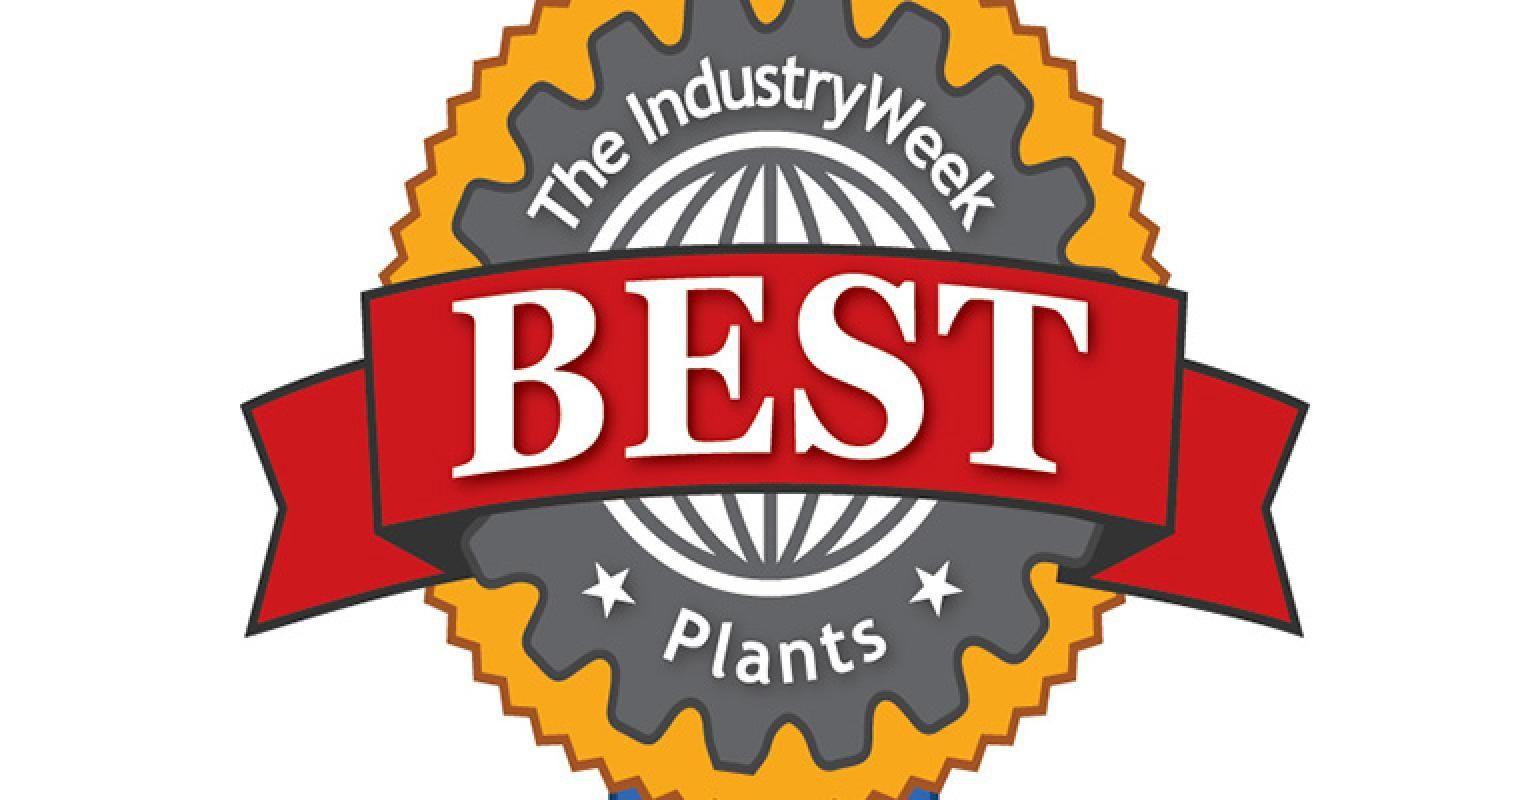 Plants Logo - IndustryWeek Names 2018 Best Plants Award Winners. Best